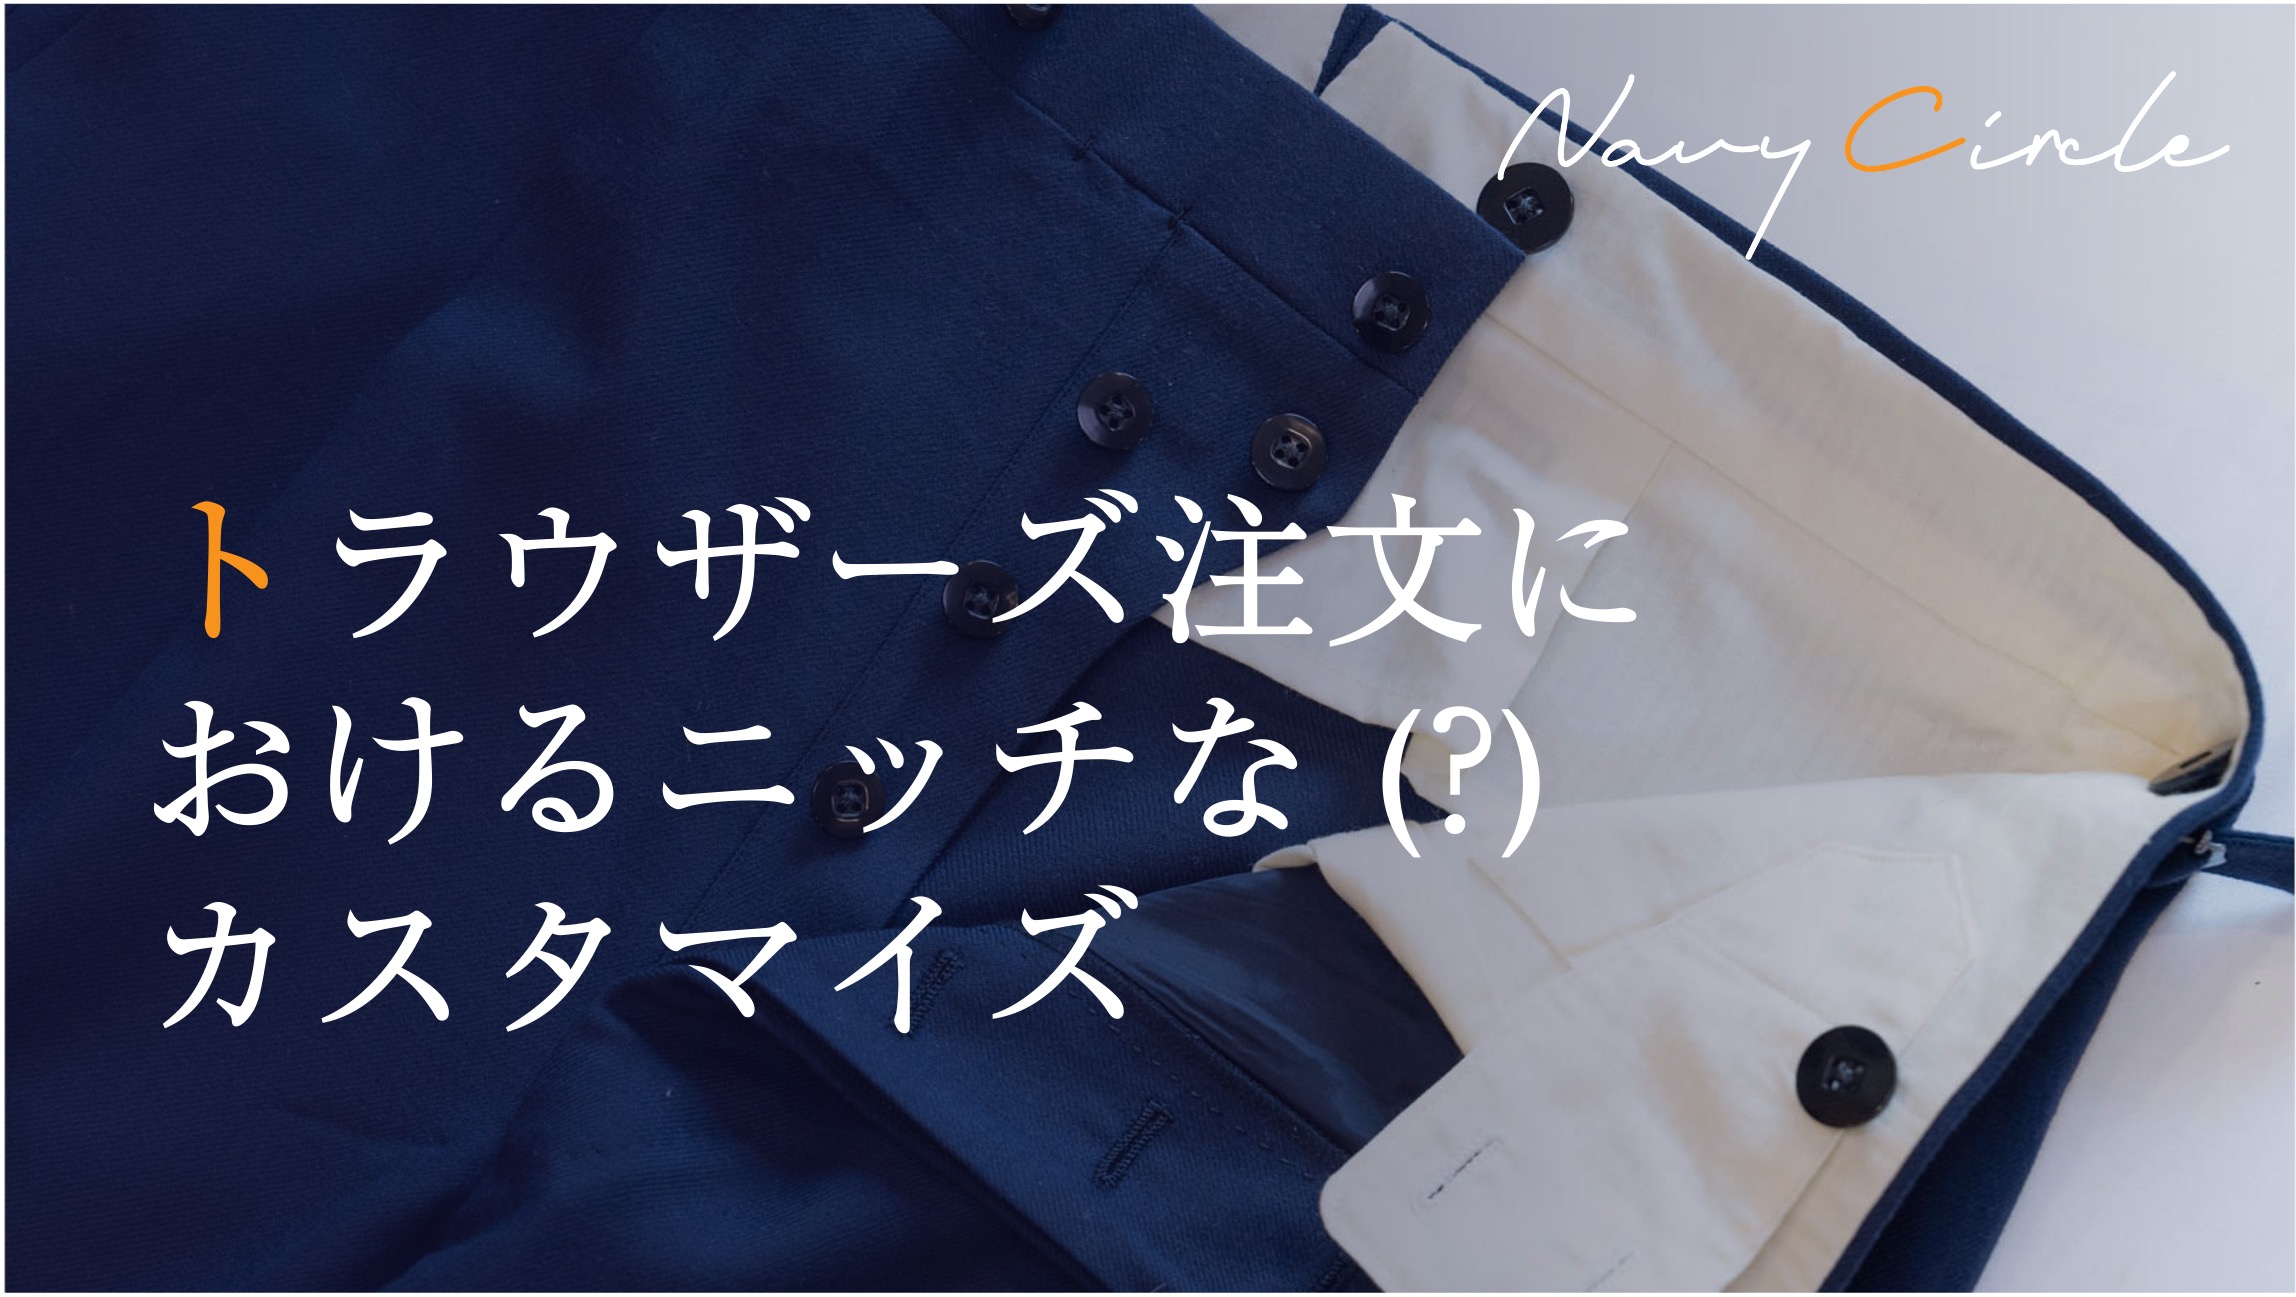 トラウザーズ注文におけるニッチな (?) カスタマイズ | Insights for custom-made trousers